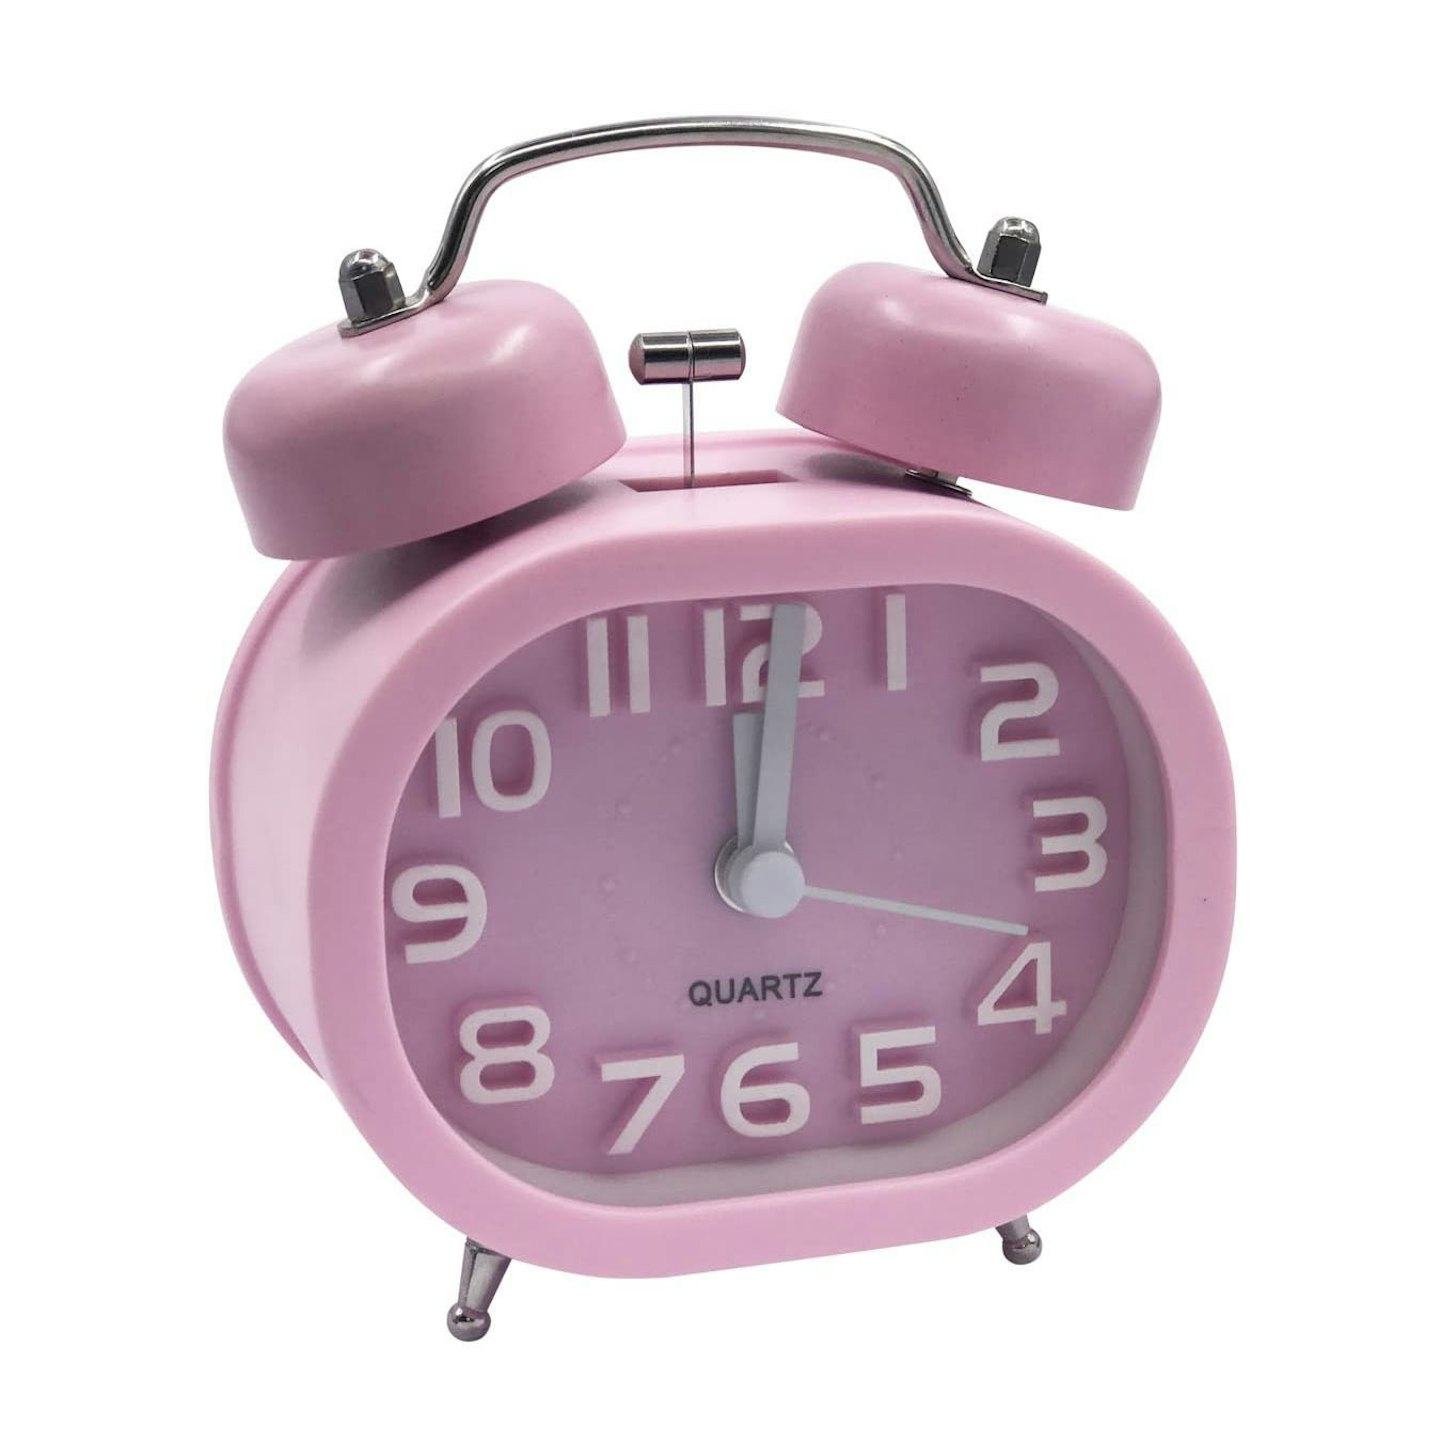 EASEHOME Analog Quartz Alarm Clock